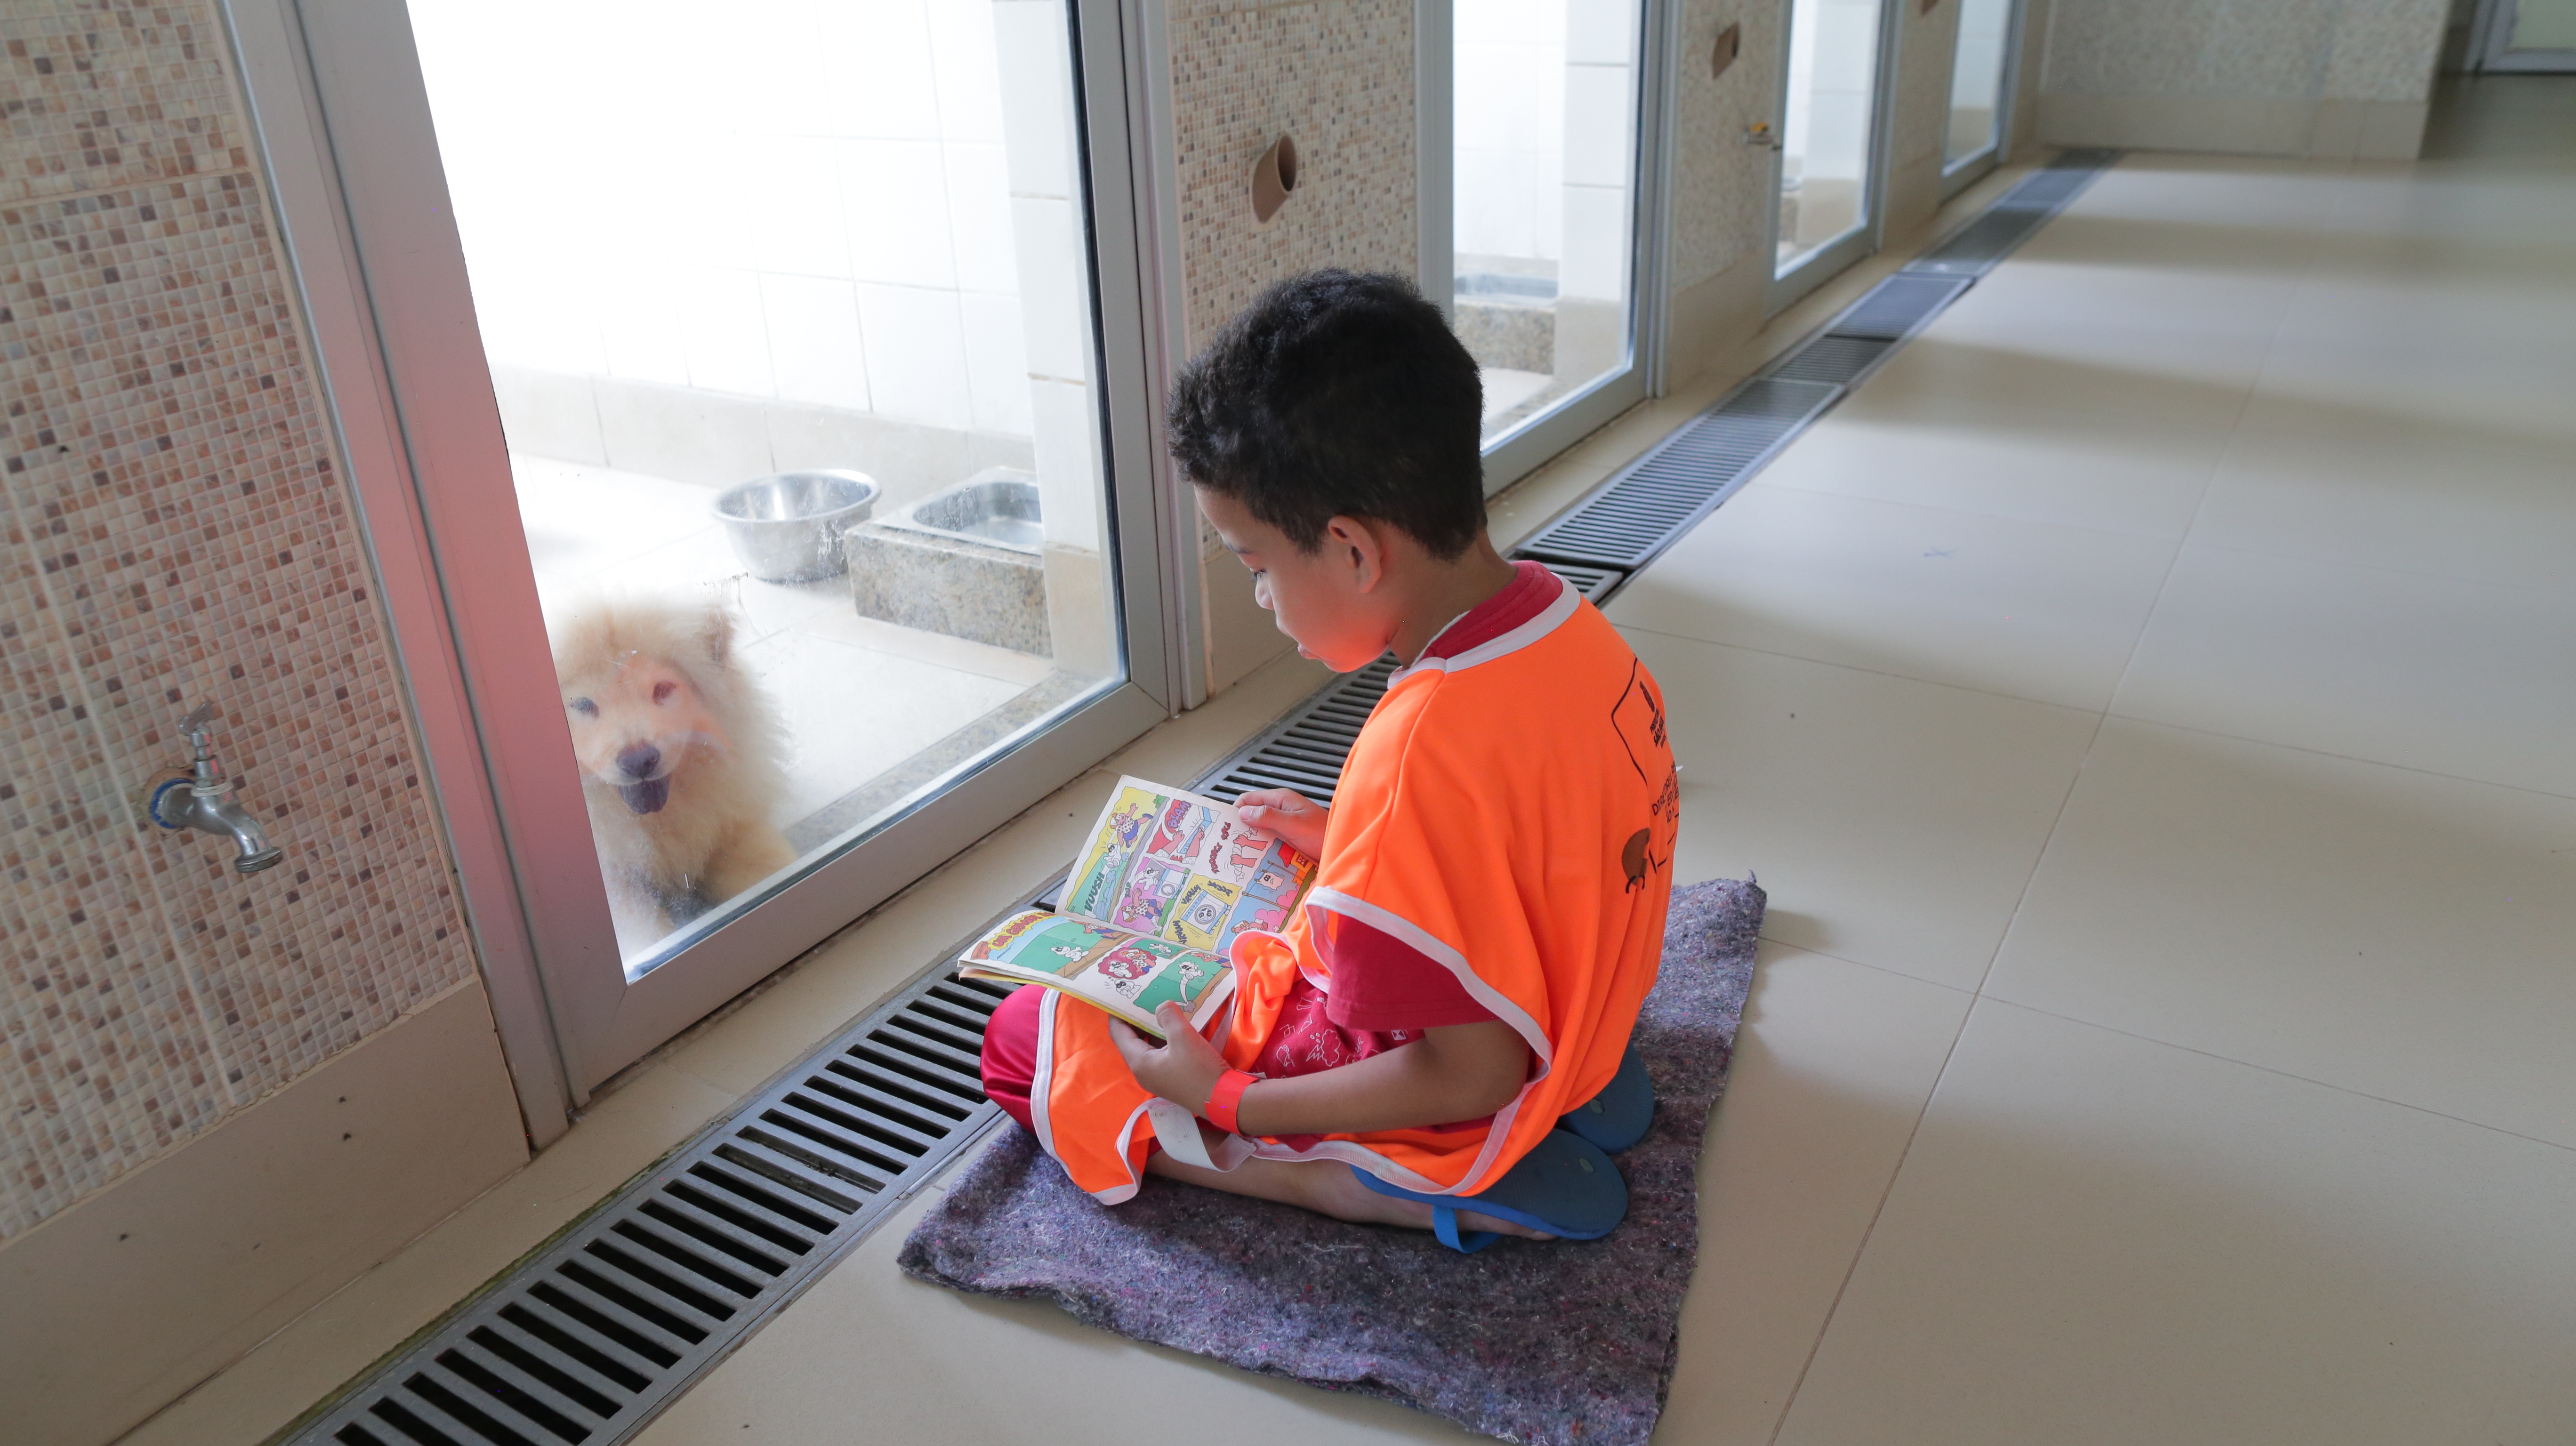 A foto mostra um menino de seis ou sete anos sentado em frente a um canil, no qual se vê um cachorro de pelos compridos e porte médio; o menino está lendo uma revista de história em quadrinhos para o cachorro